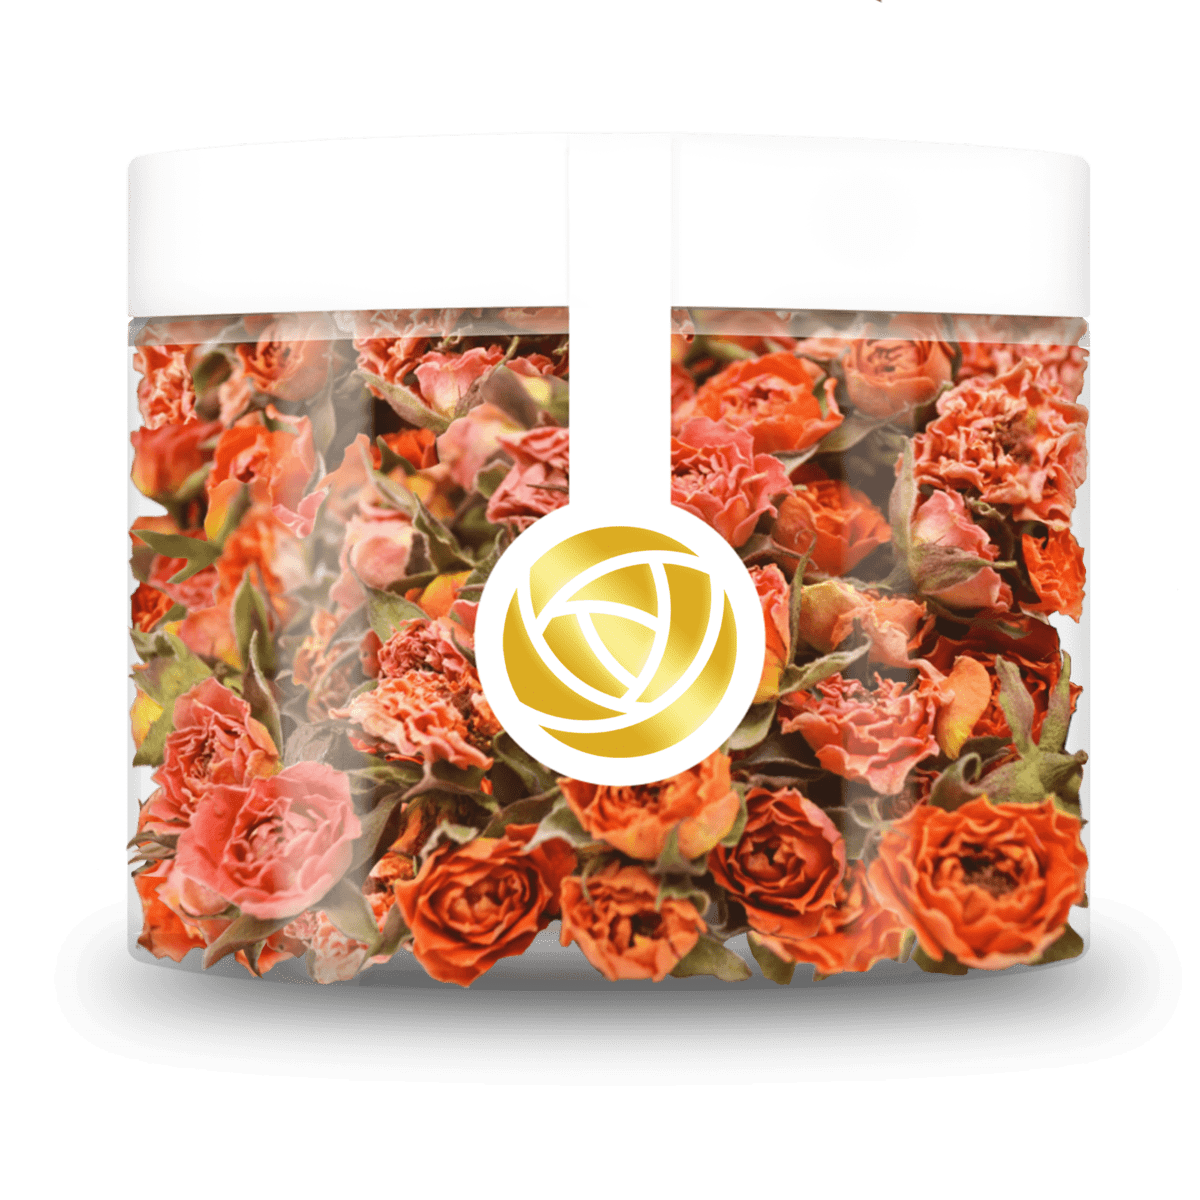 Verleihen Sie Ihren Torten und Gebäcken mit unseren essbaren Orange Sunrise Blüten eine besondere Note. Unsere getrockneten Orange Sunrise Rosenblüten setzen einzigartige Akzente bei der Dekoration Ihrer Torte und sind perfekt für eine schöne und köstliche Torte. Von ROSIE ROSE im Online-Shop kaufen